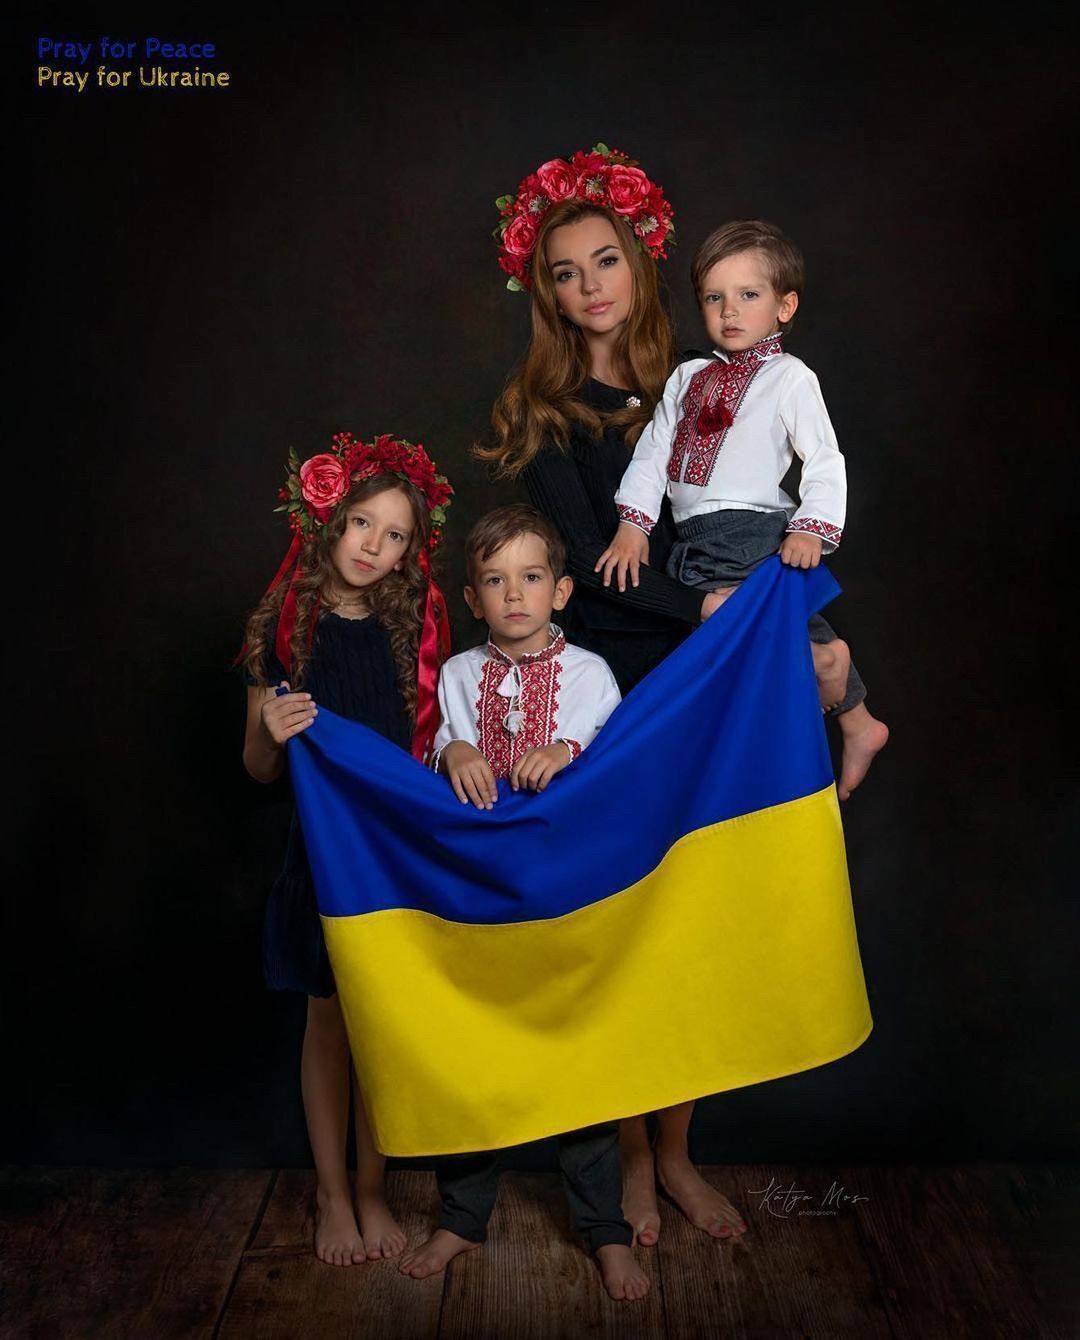 Стаховский расстался с женой-россиянкой из-за решения воевать за Украину. У пары трое детей